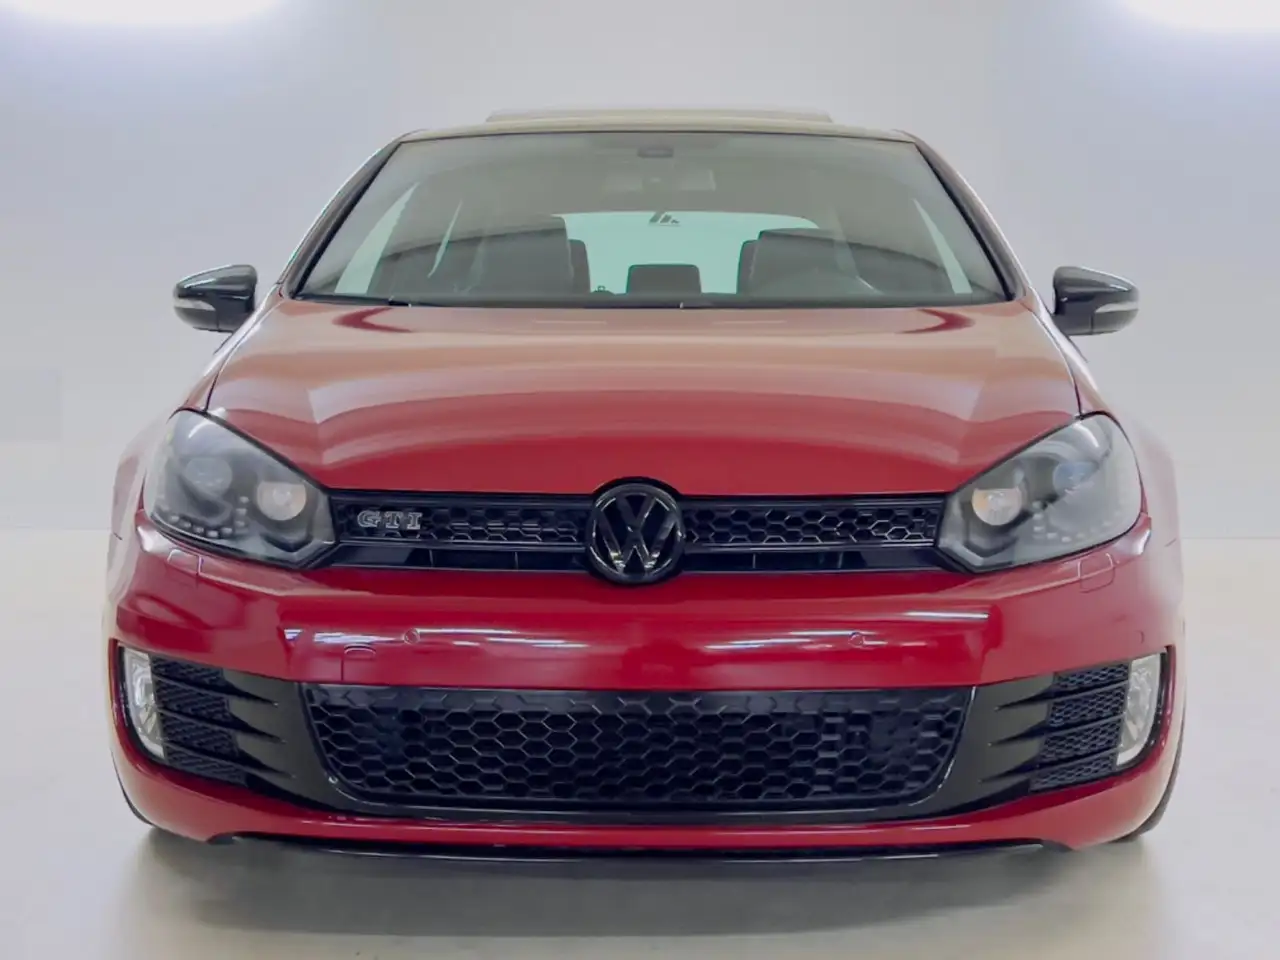 Volkswagen Golf VI GTD gebraucht kaufen in Pfullingen Preis 13500